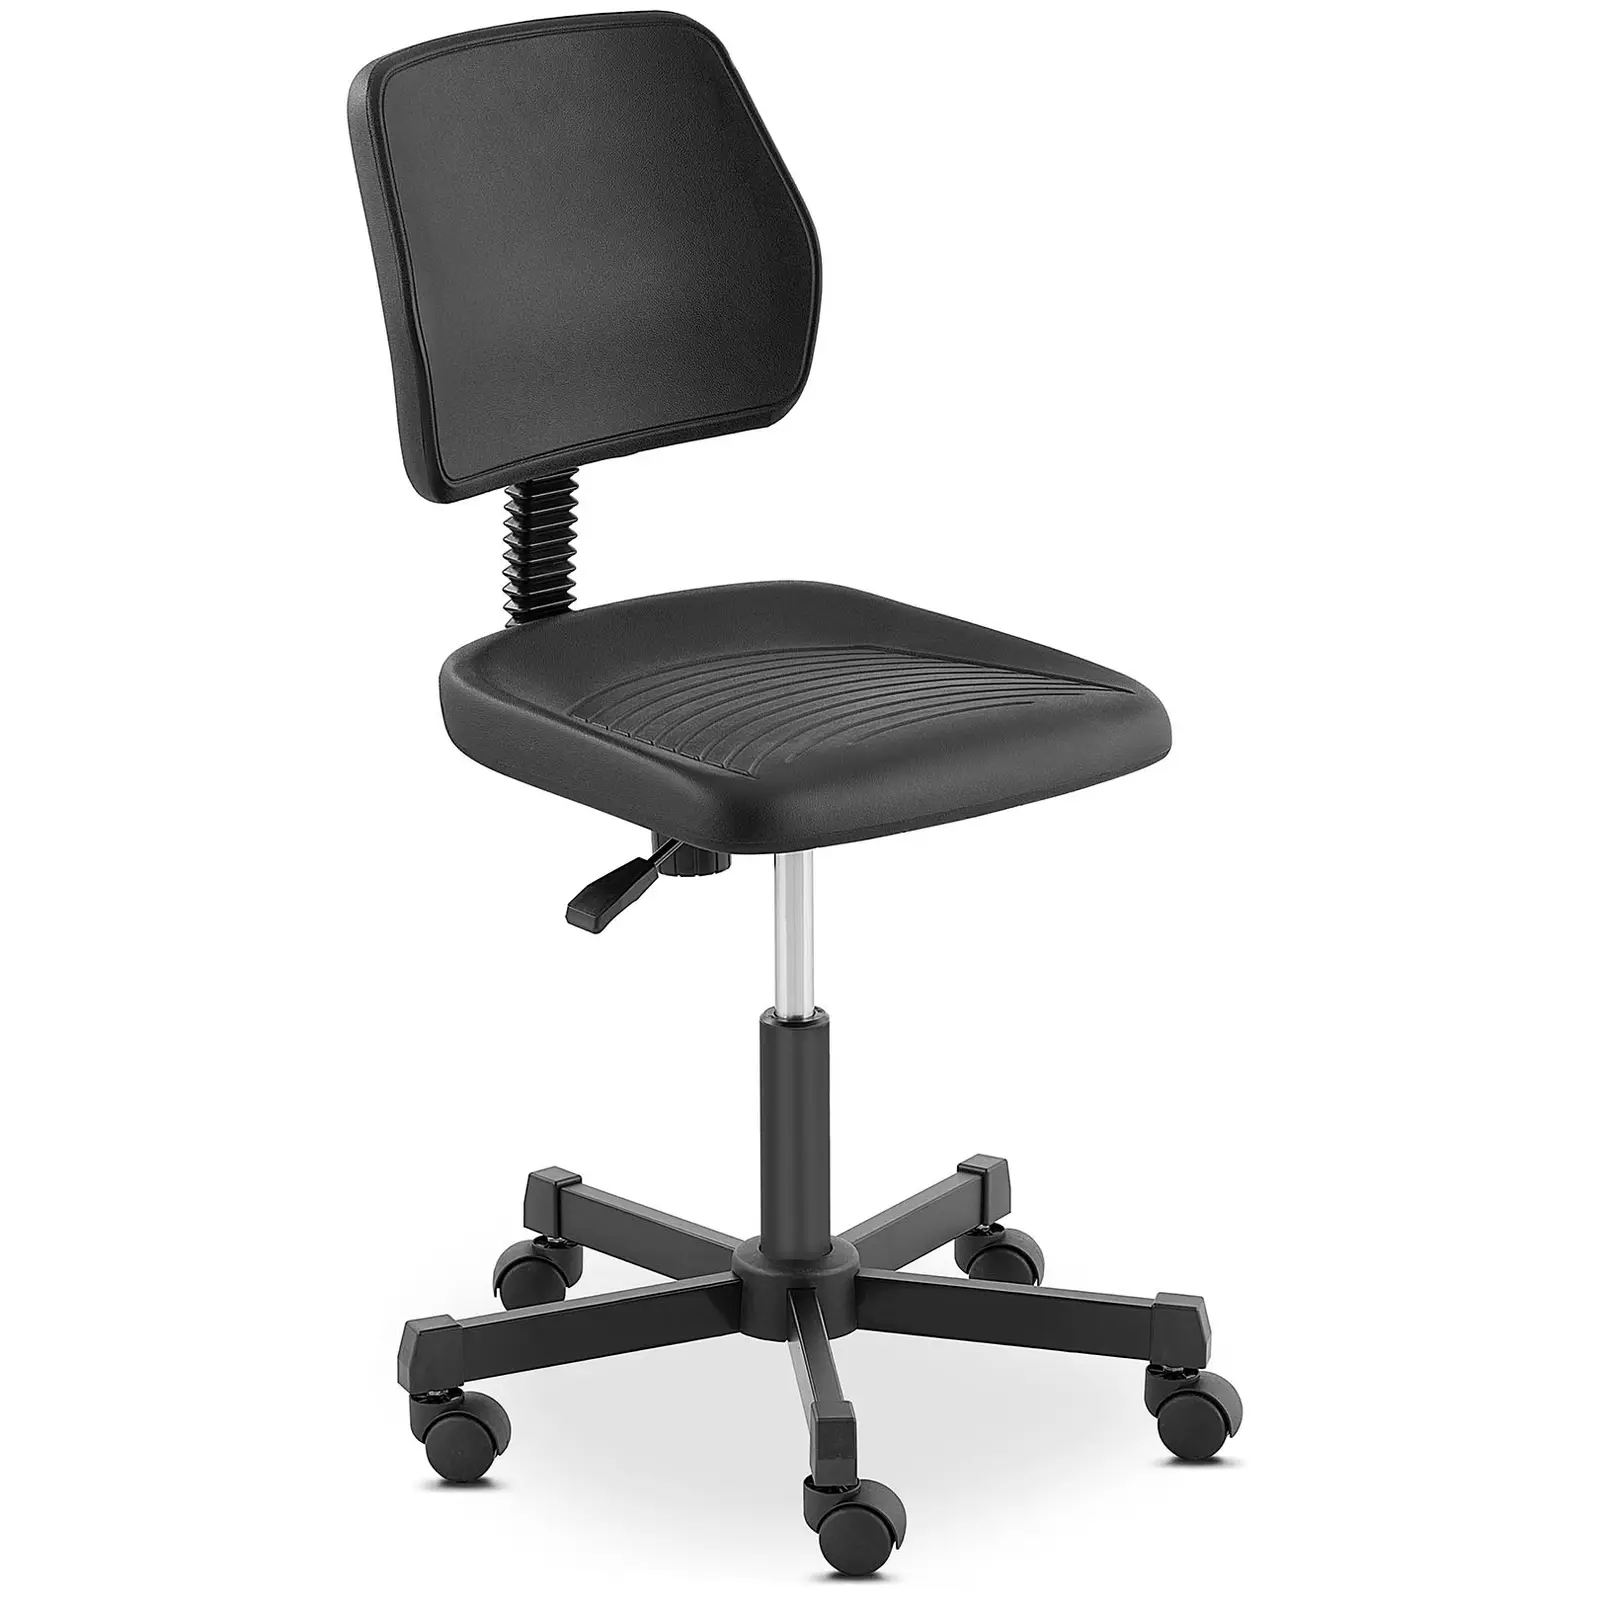 Laboratórna stolička - 120 kg - čierna - výška nastaviteľná medzi 410 – 550 mm